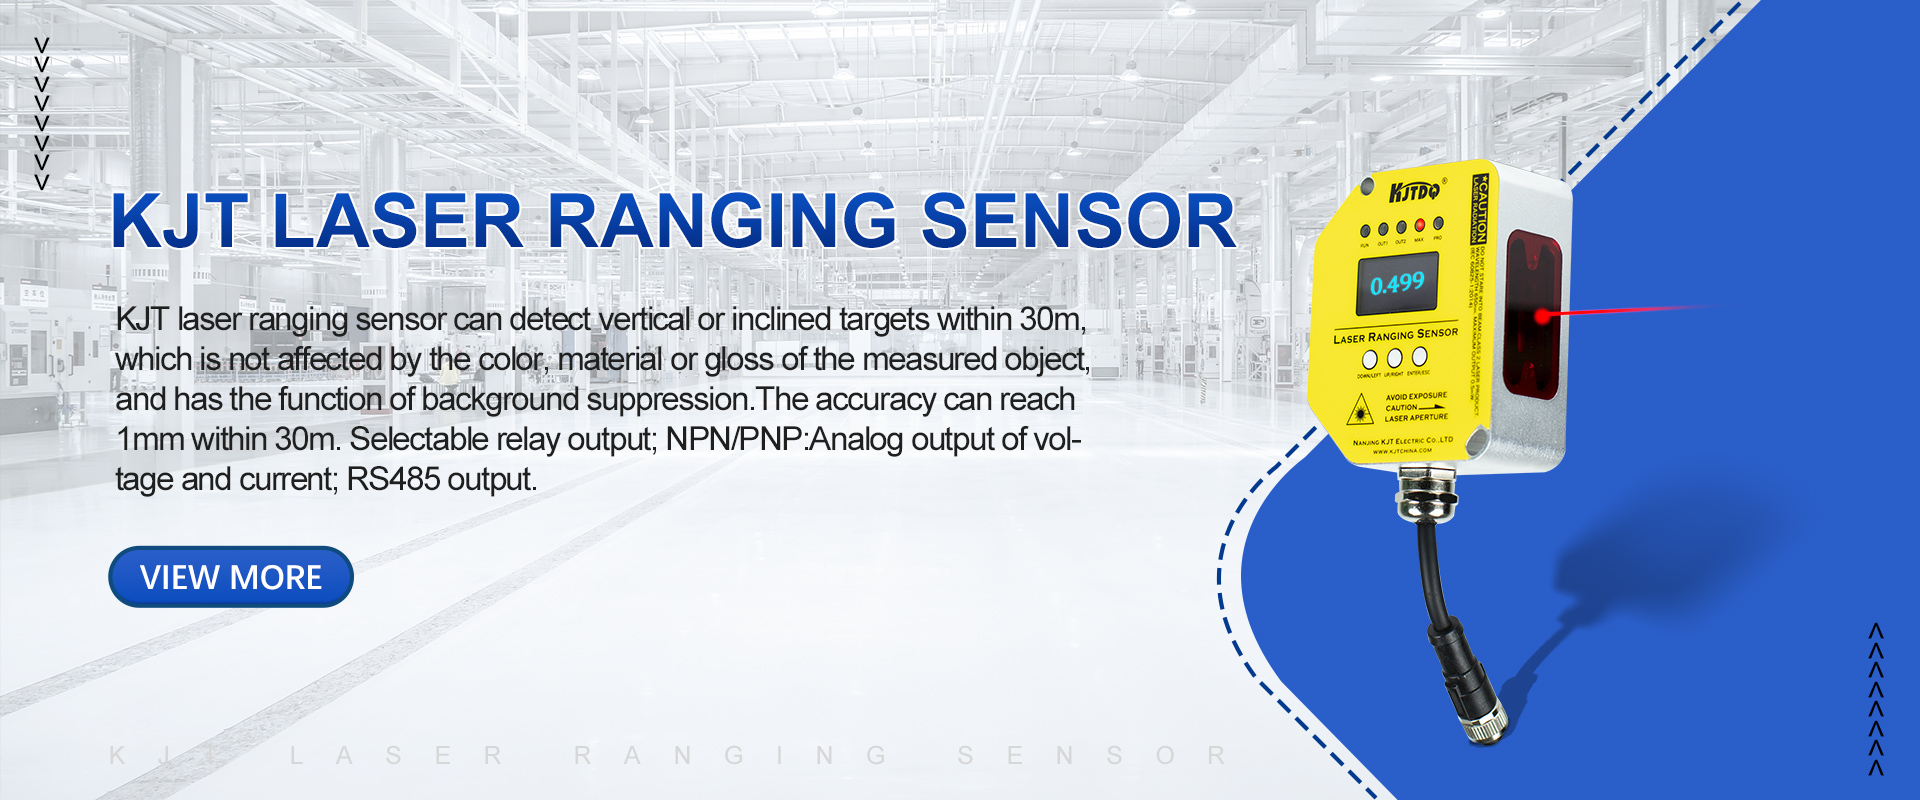 laser ranging sensor